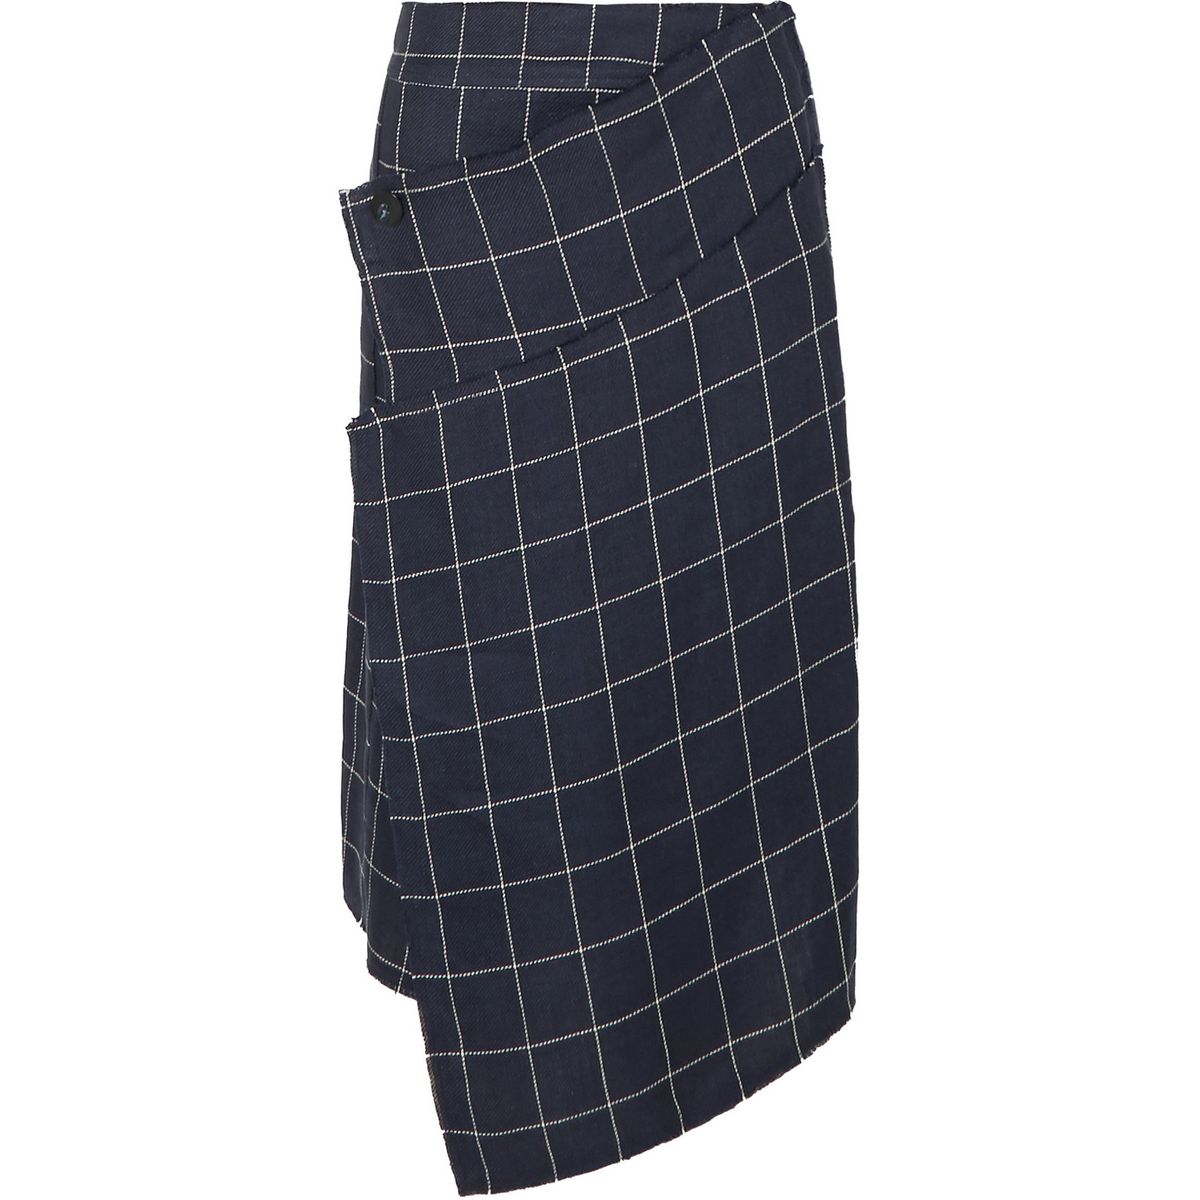 The Skirt